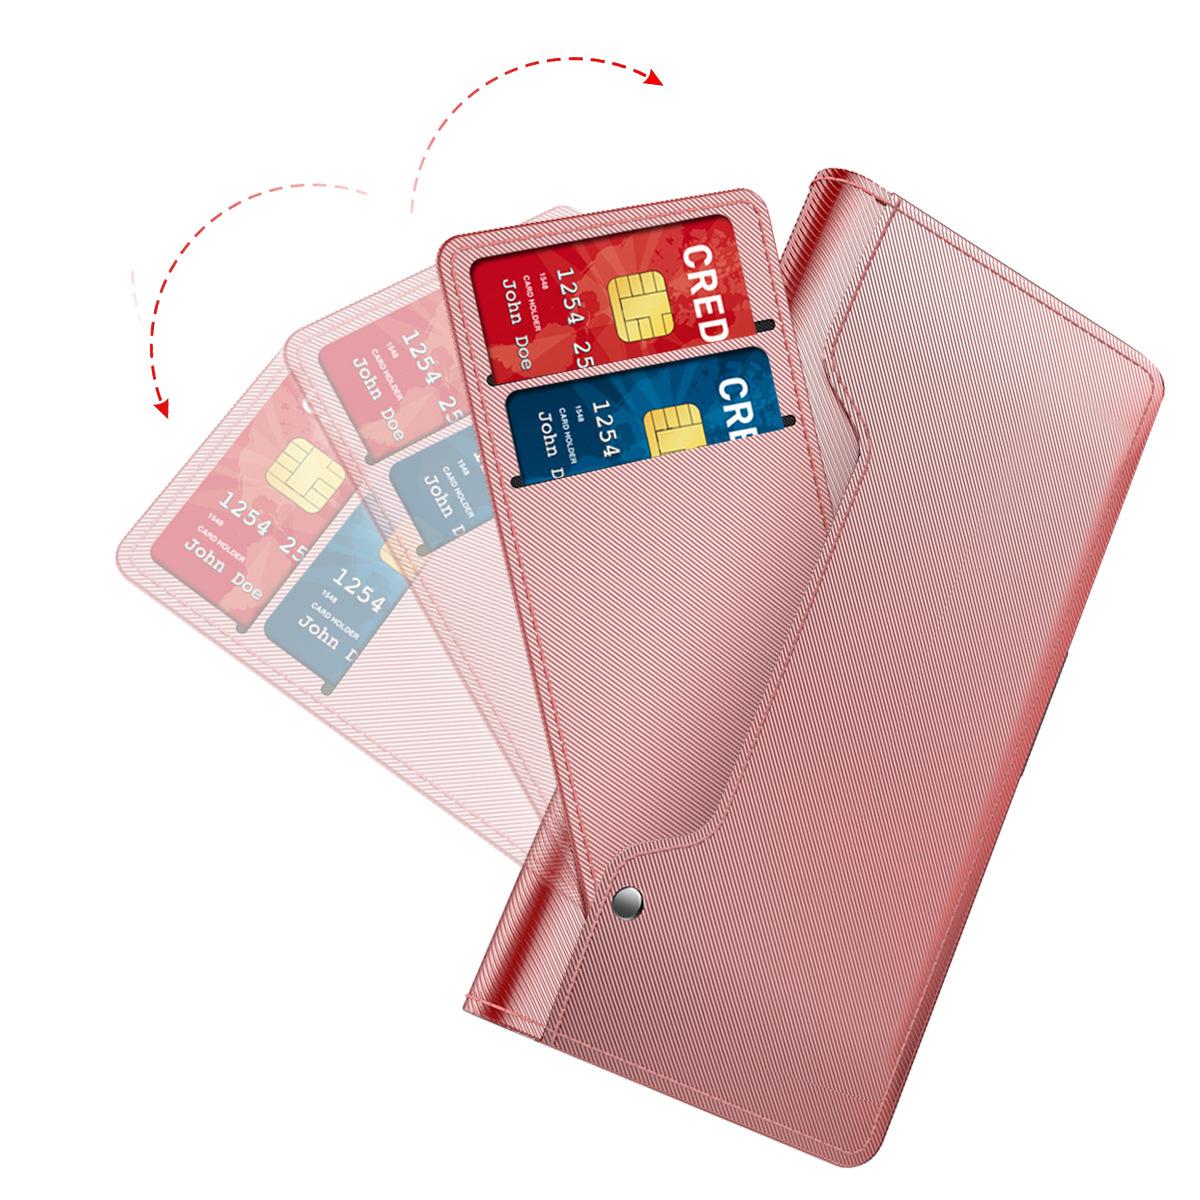 Samsung Galaxy S21 Plus Wallet Case Mirror Pink Gold